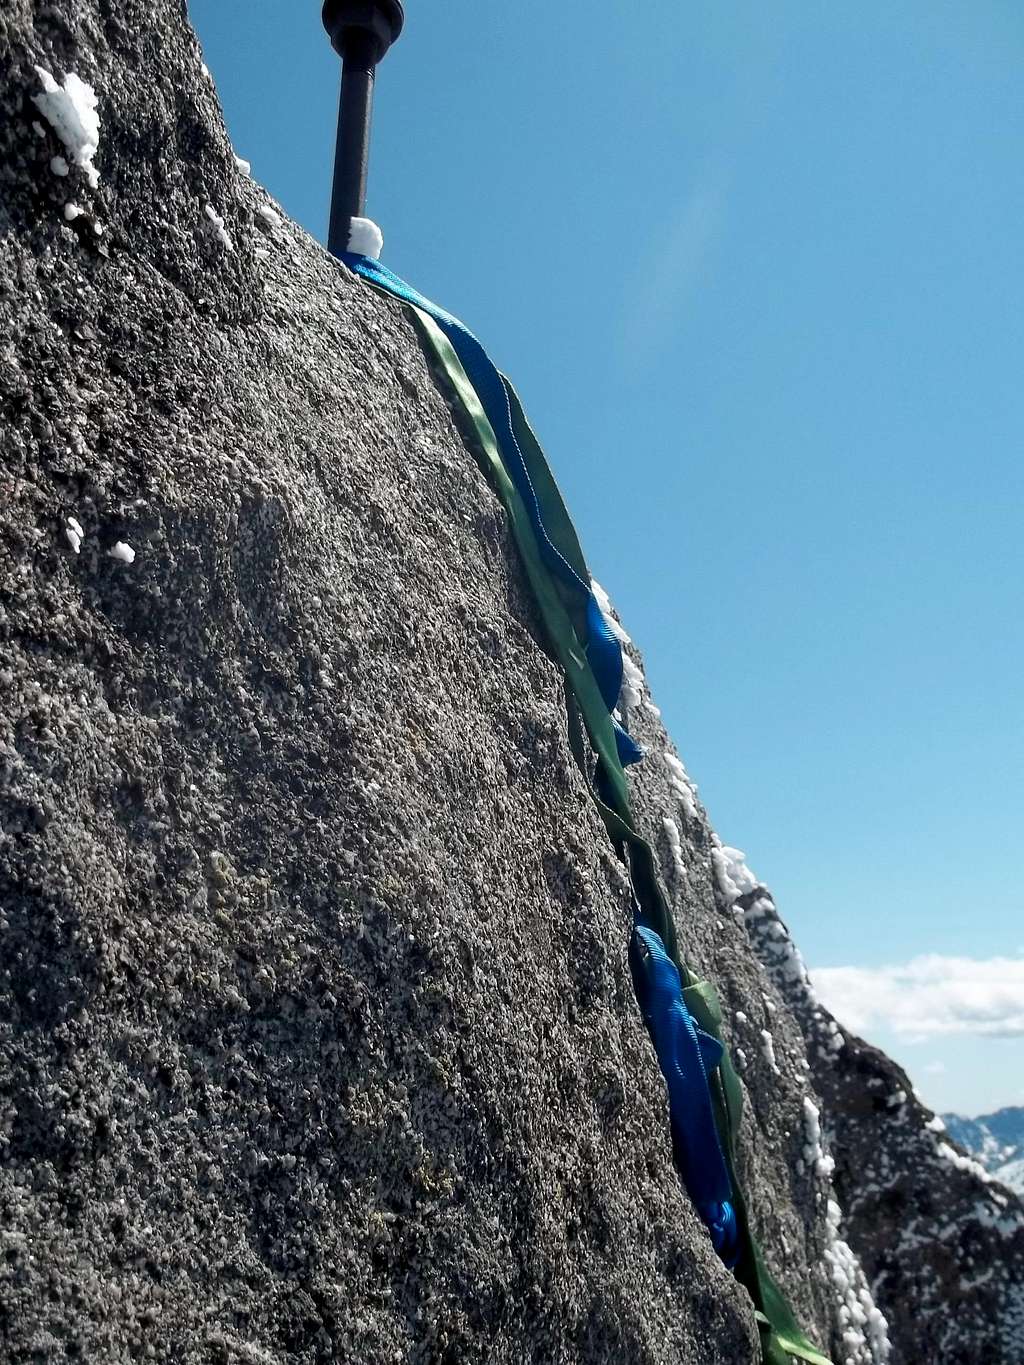 Slings were useful on the final summit rock